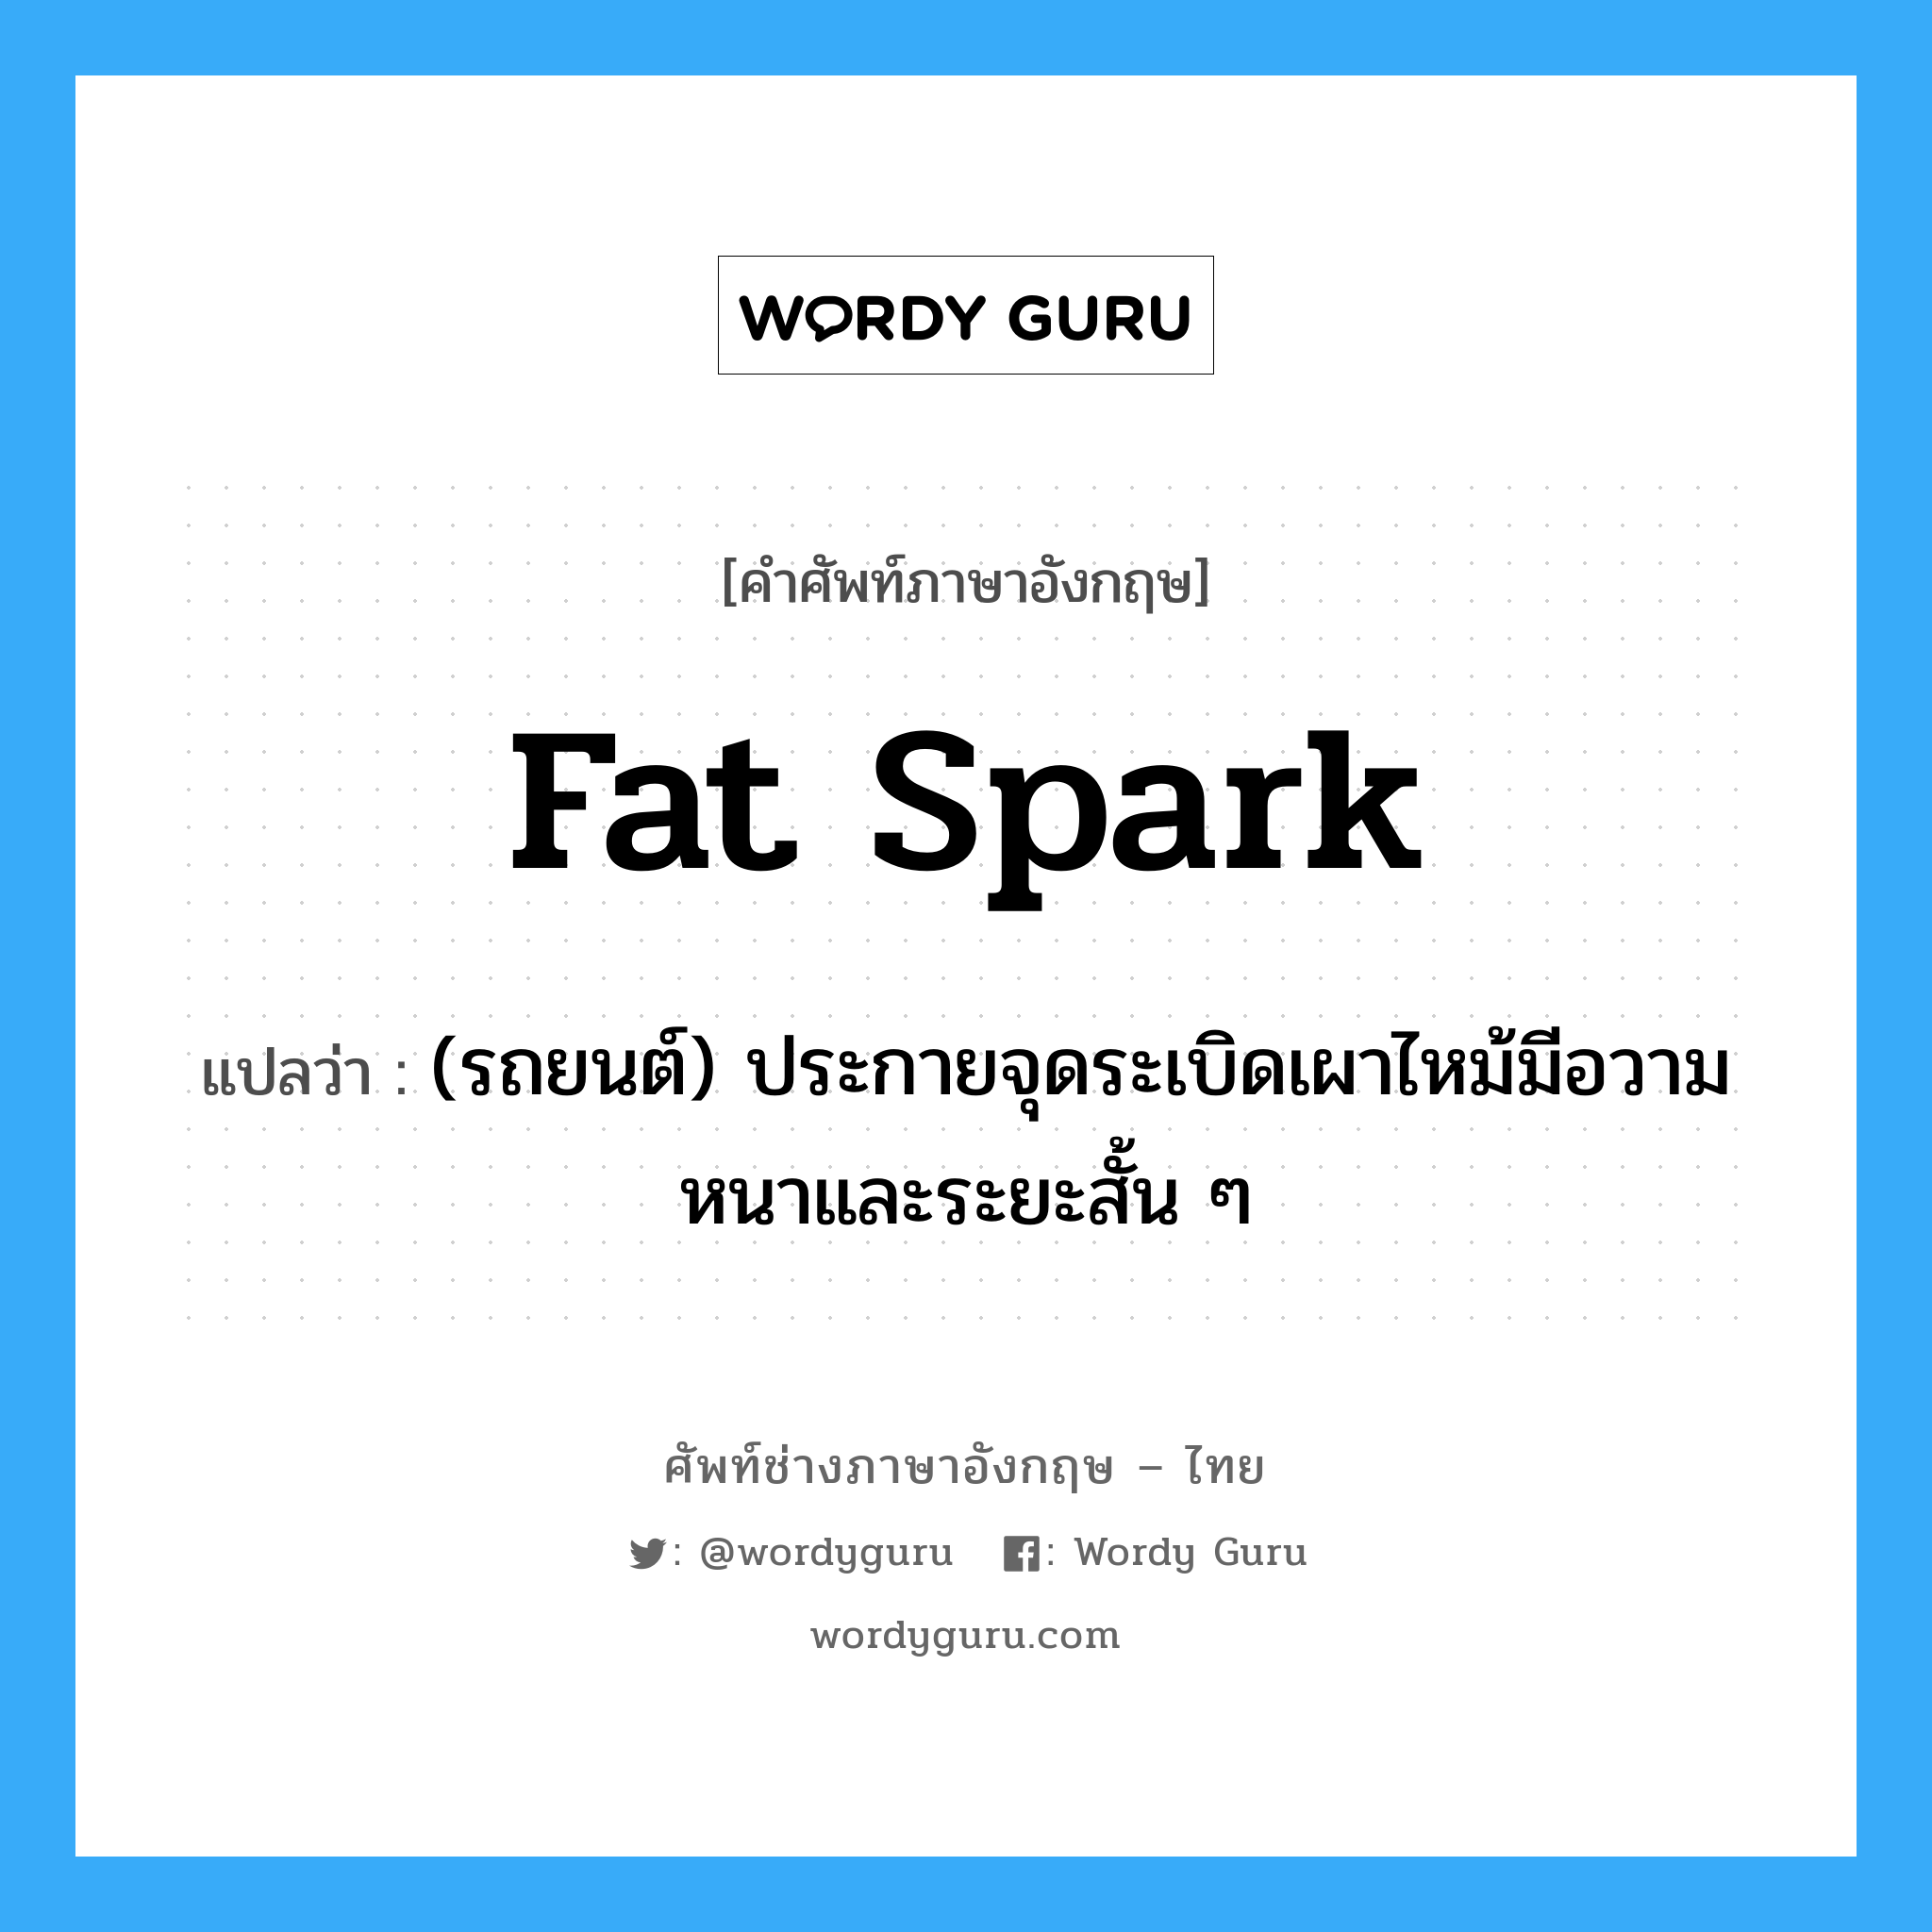 fat spark แปลว่า?, คำศัพท์ช่างภาษาอังกฤษ - ไทย fat spark คำศัพท์ภาษาอังกฤษ fat spark แปลว่า (รถยนต์) ประกายจุดระเบิดเผาไหม้มีอวามหนาและระยะสั้น ๆ